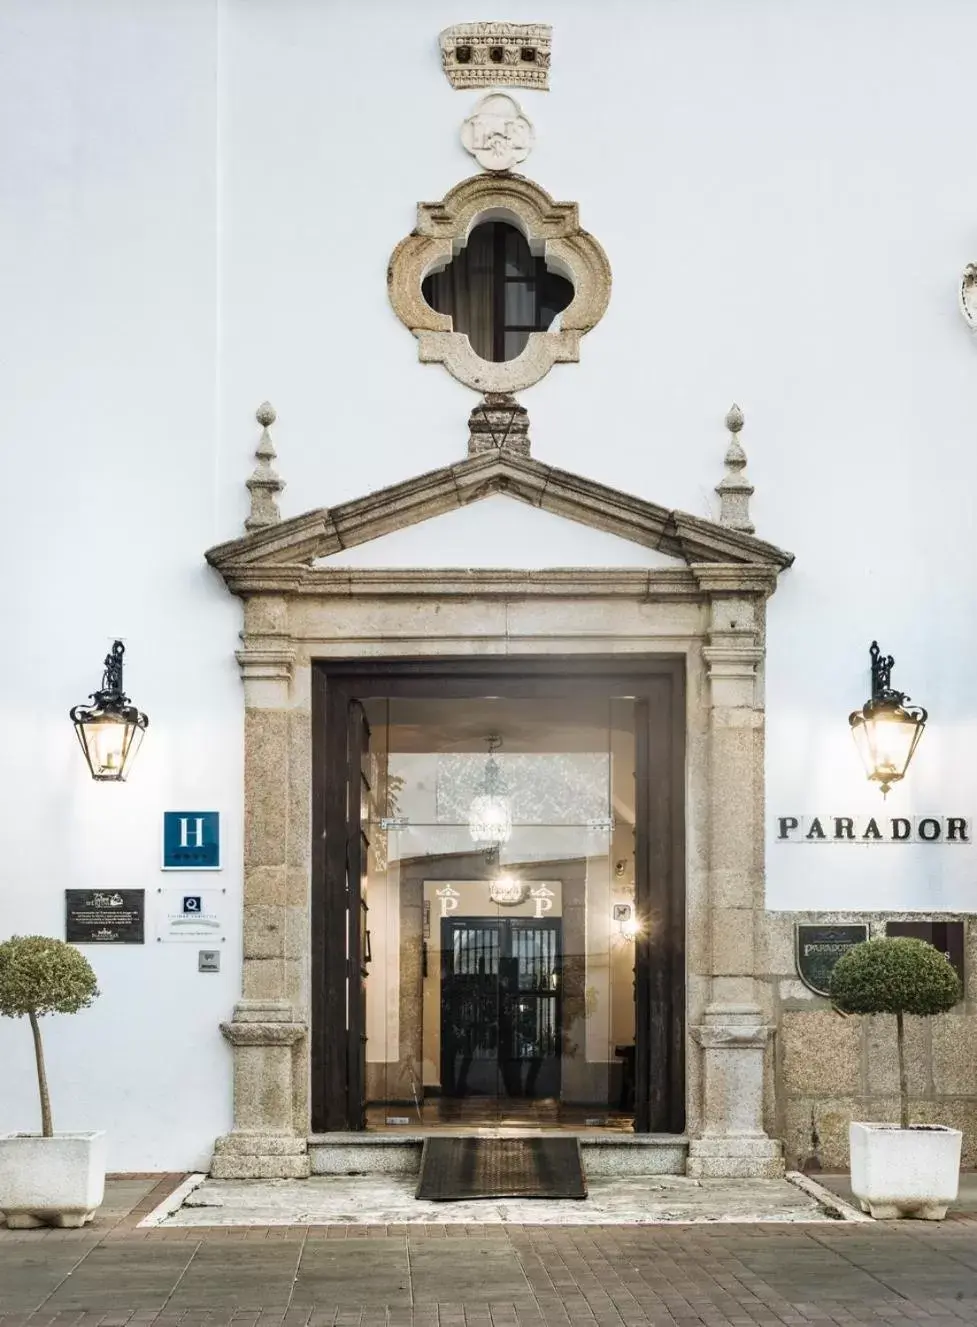 Facade/entrance in Parador de Mérida